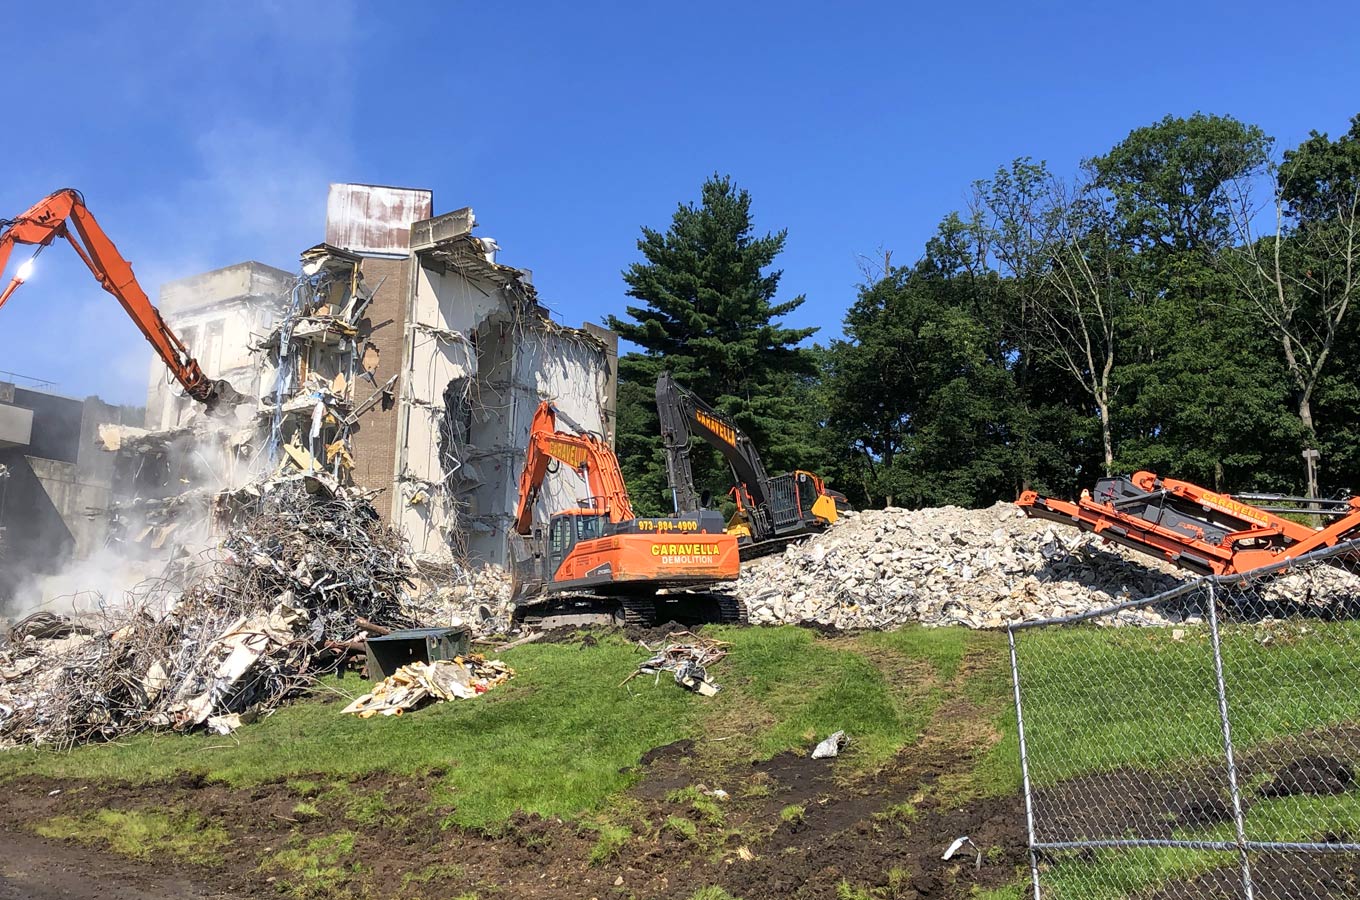 Demolition Services in Hoboken, NJ 07030 | Caravella Demolition